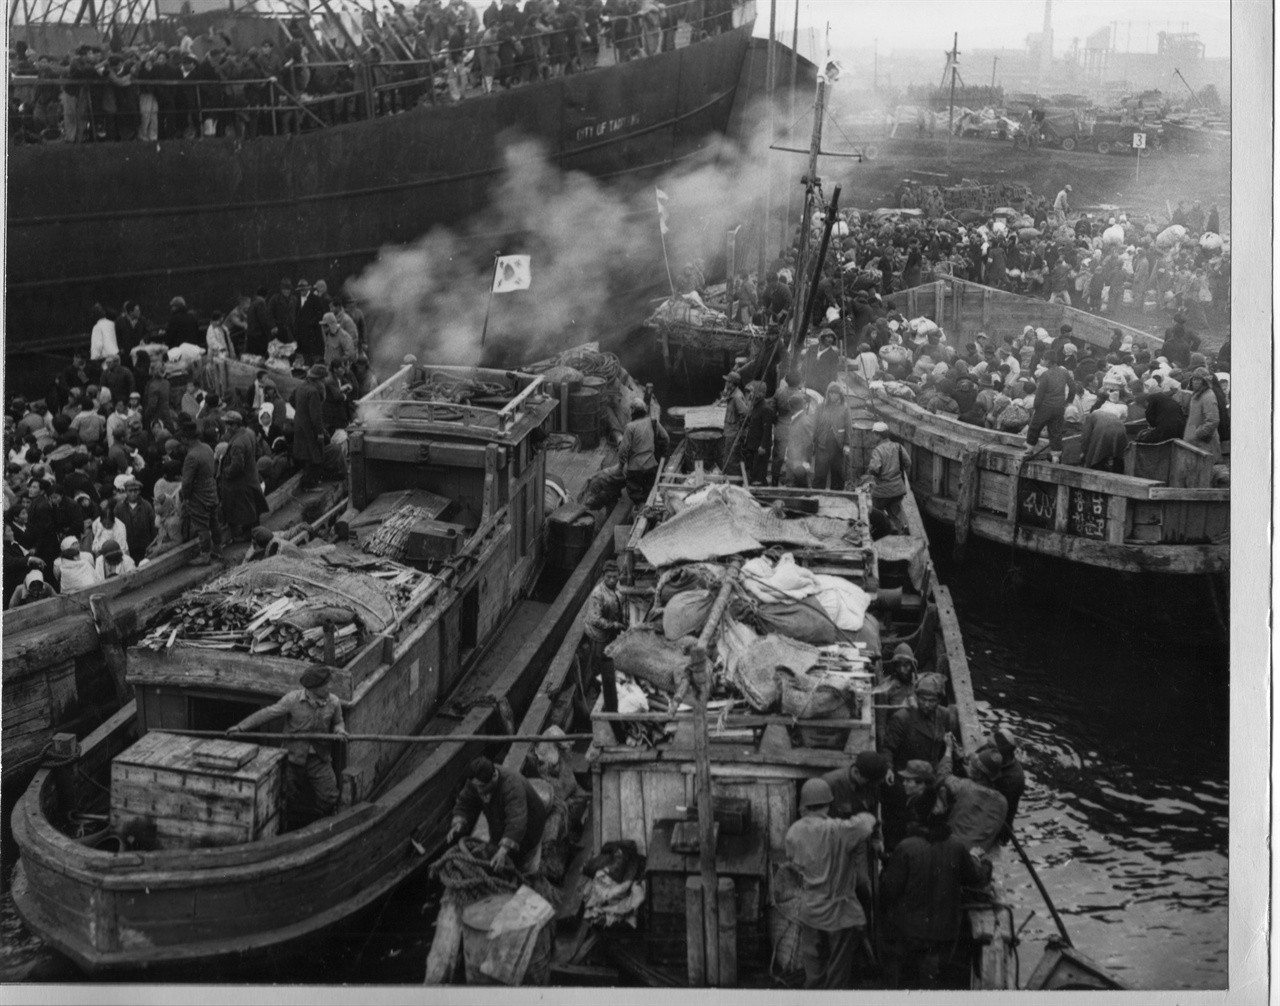  1950. 12. 19. 흥남 항에 몰려 있는 피란민 수송선들. 